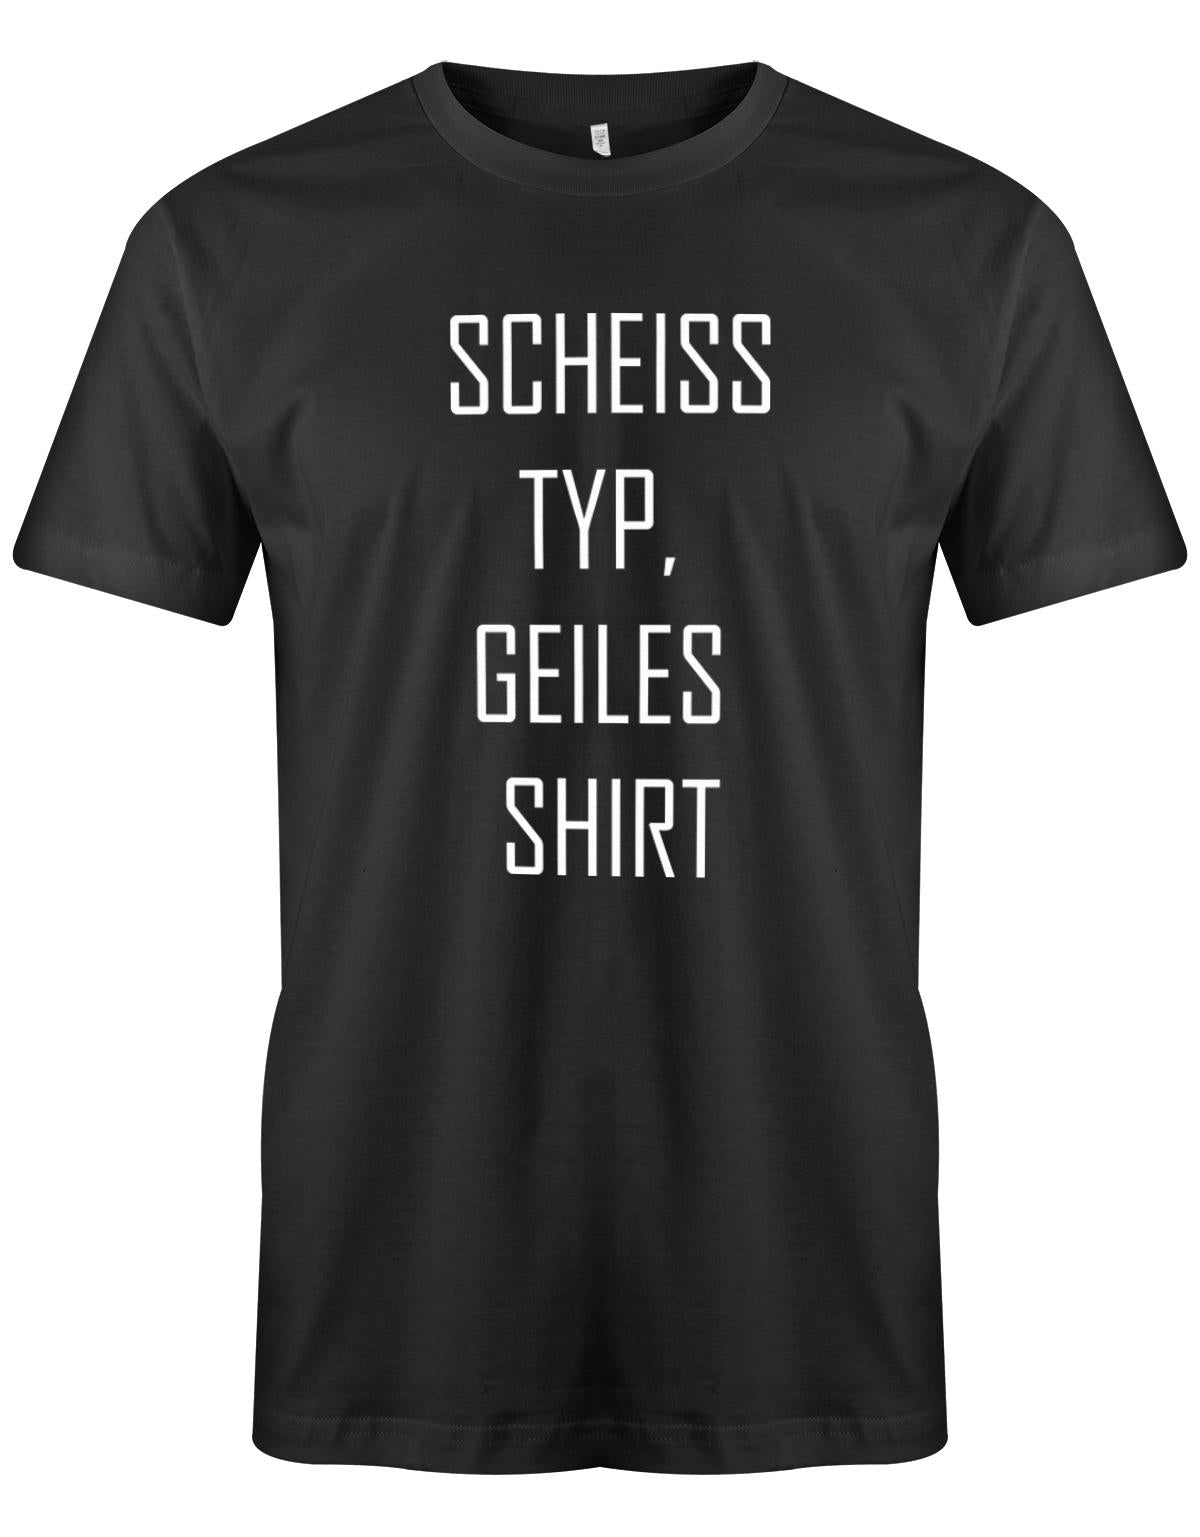 SCheiss-Typ-geiles-Shirt-schwarz